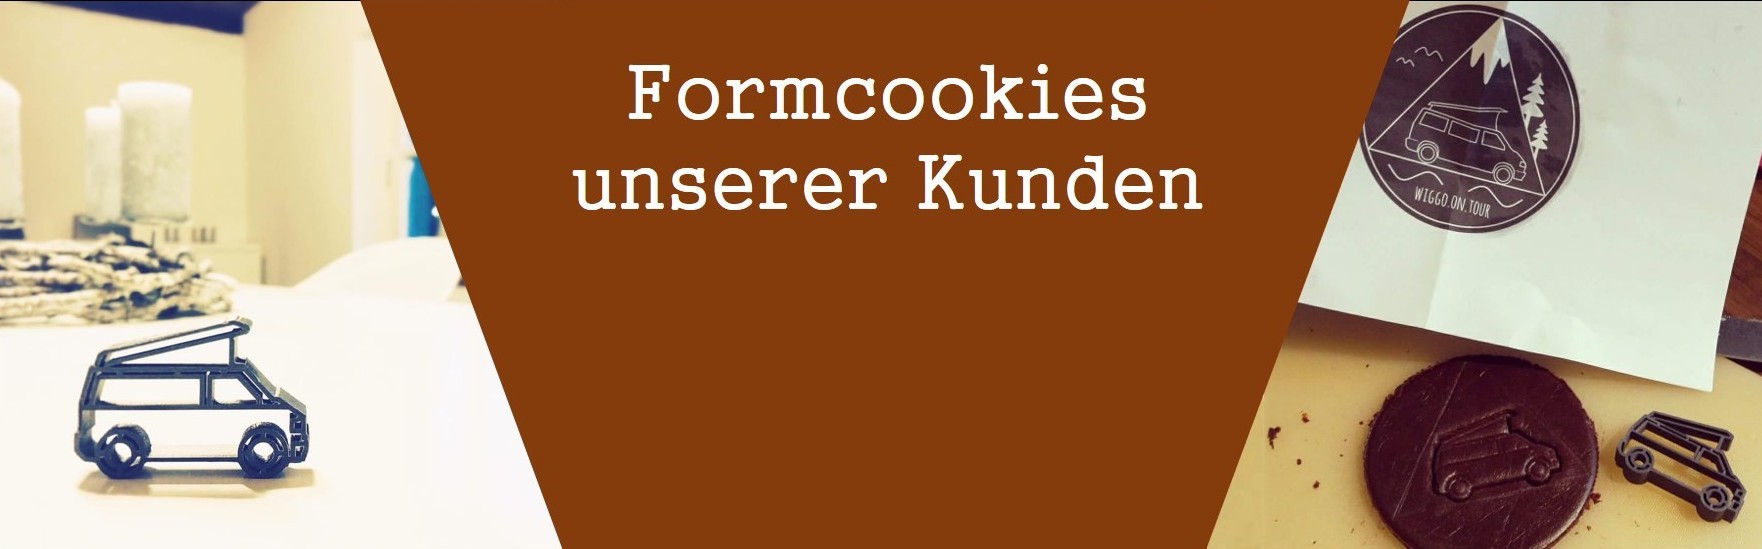 Formcookies unserer Kunden